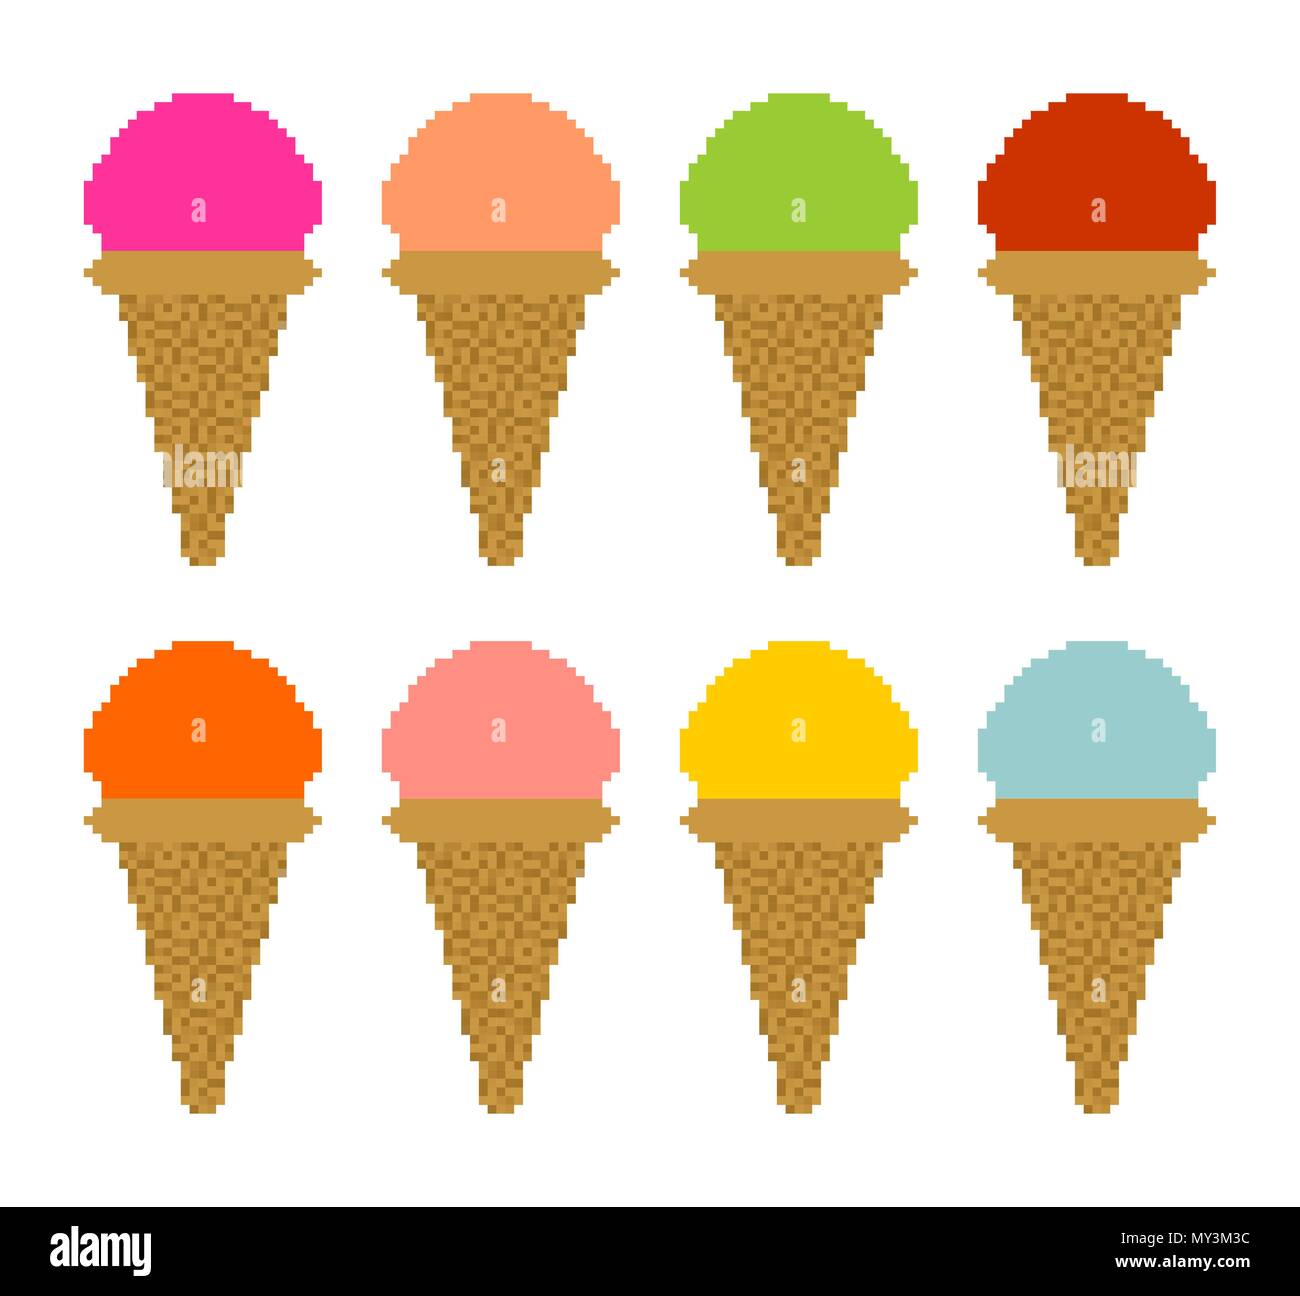 Juego de helados píxel art. 8 bits Icecream ilustración vectorial Imagen  Vector de stock - Alamy